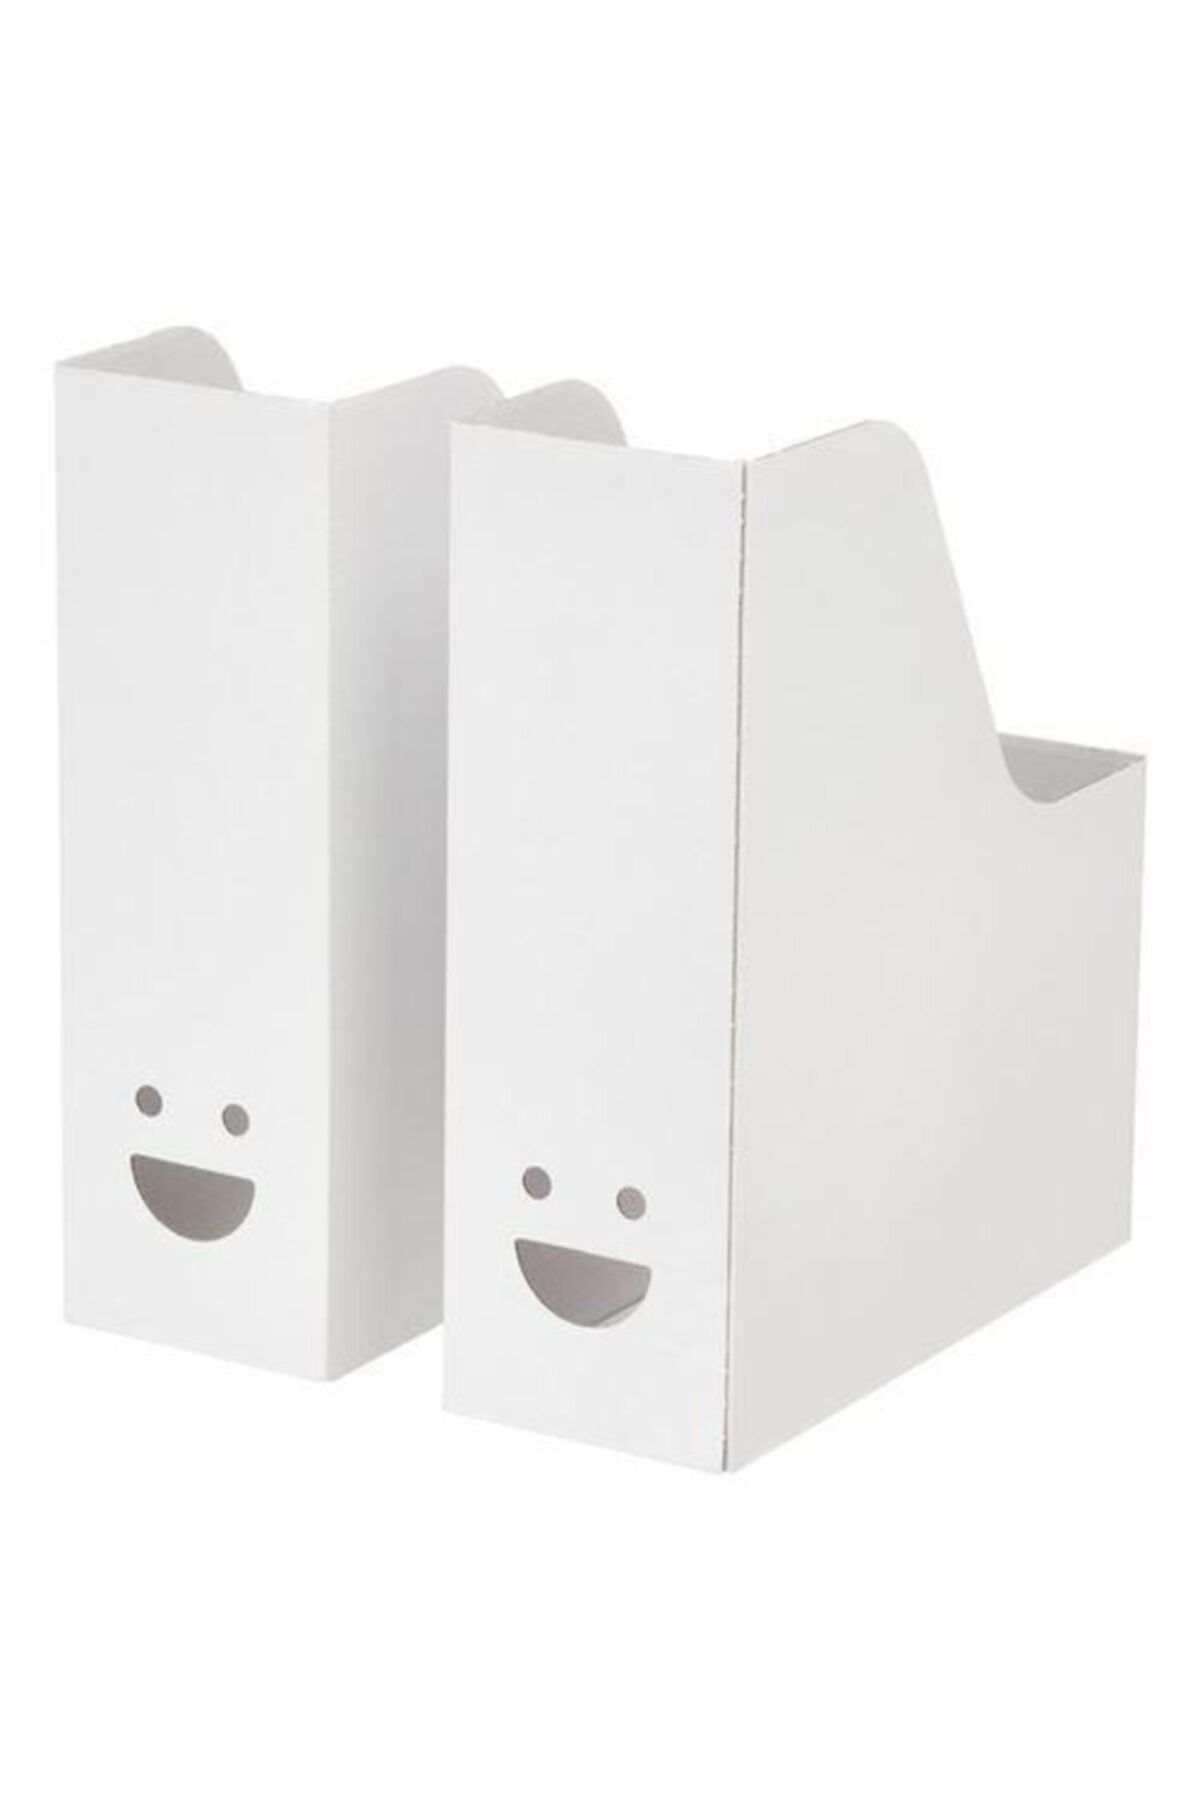 IKEA Tjabba Gülen Yüz 2 Li Set Beyaz Kutu Klasör Dosyalık Magazinlik Evrak Dergi Dosyası 2 Adet